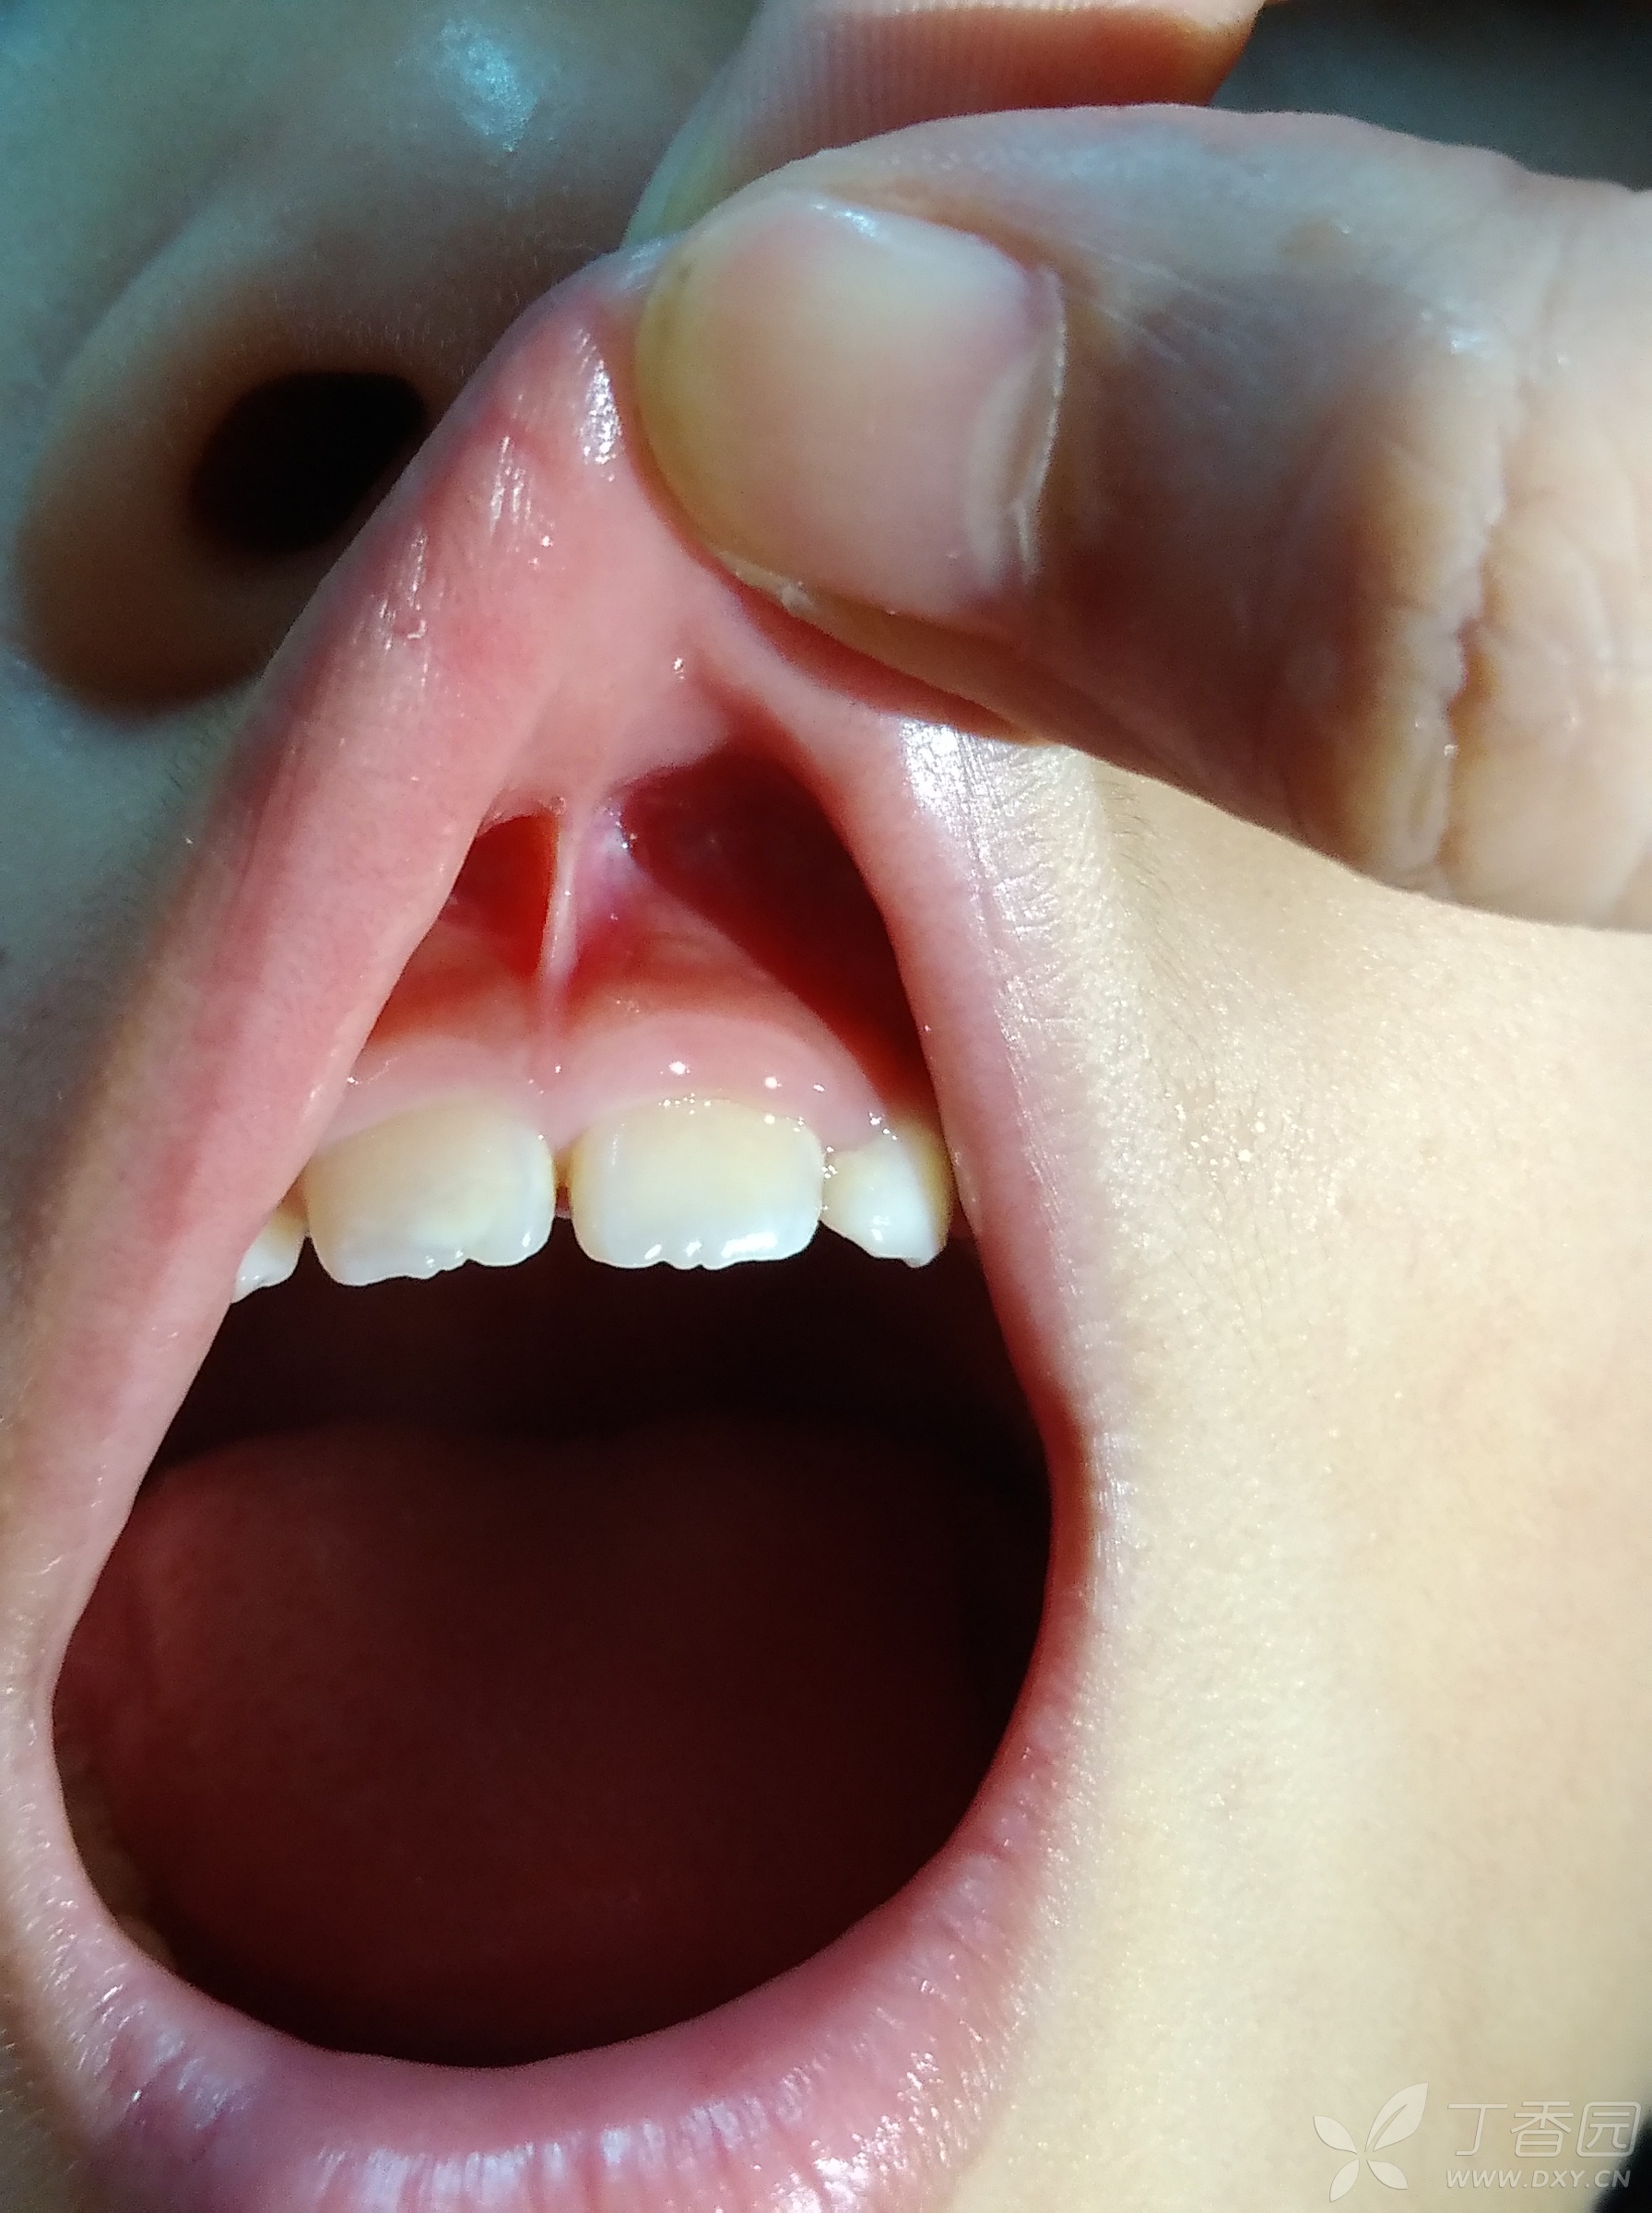 婴儿上唇系带正常图片